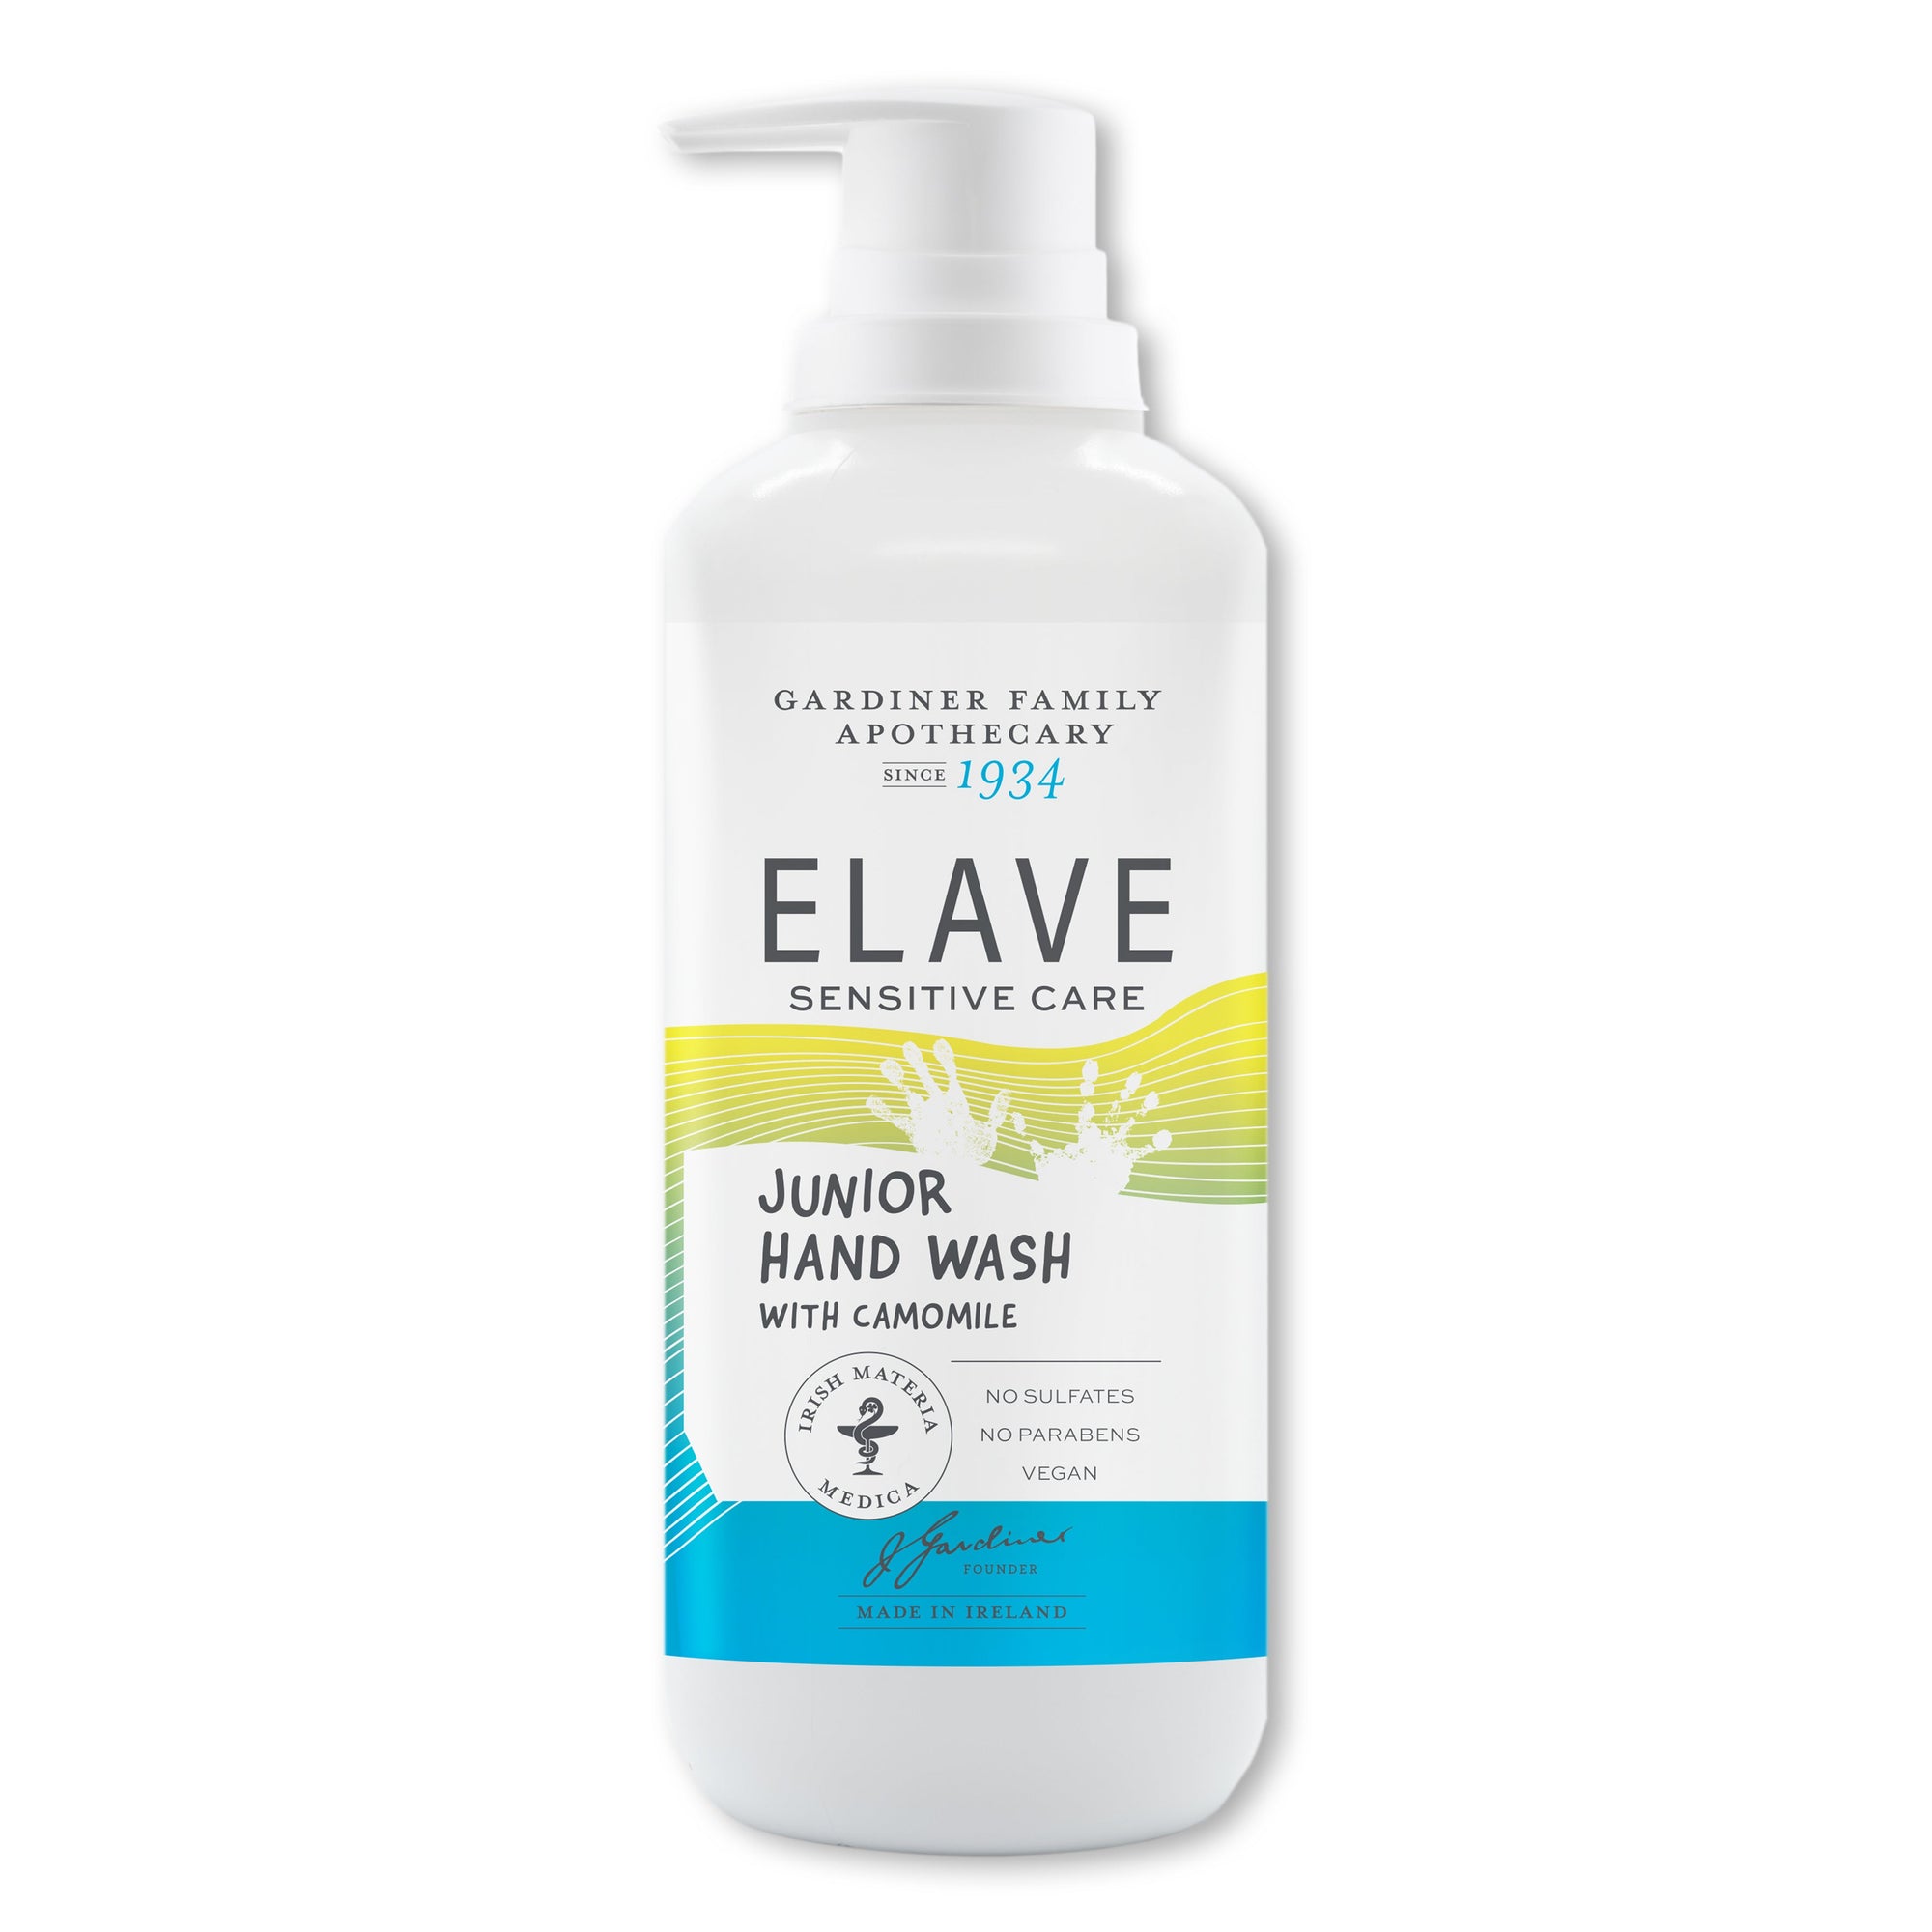 Elave 兒童敏感肌洗手液 500毫升 / Junior Hand Wash 500ml